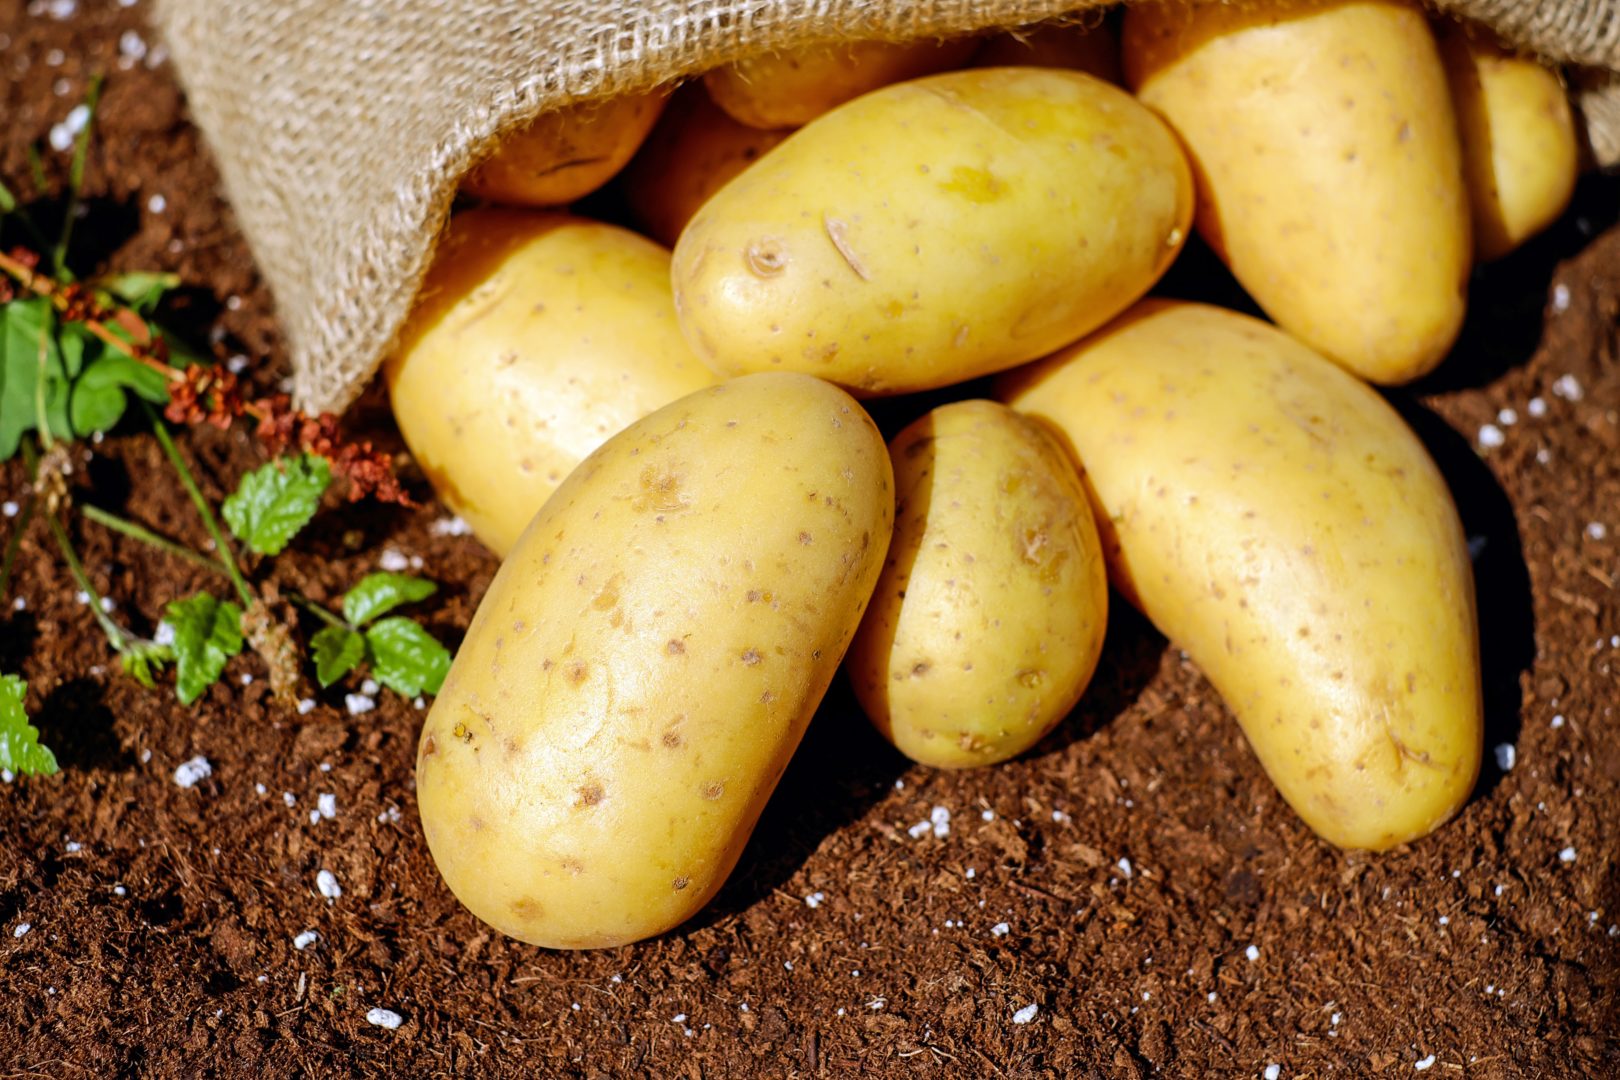 Potatoes in dirt beside mesh bag